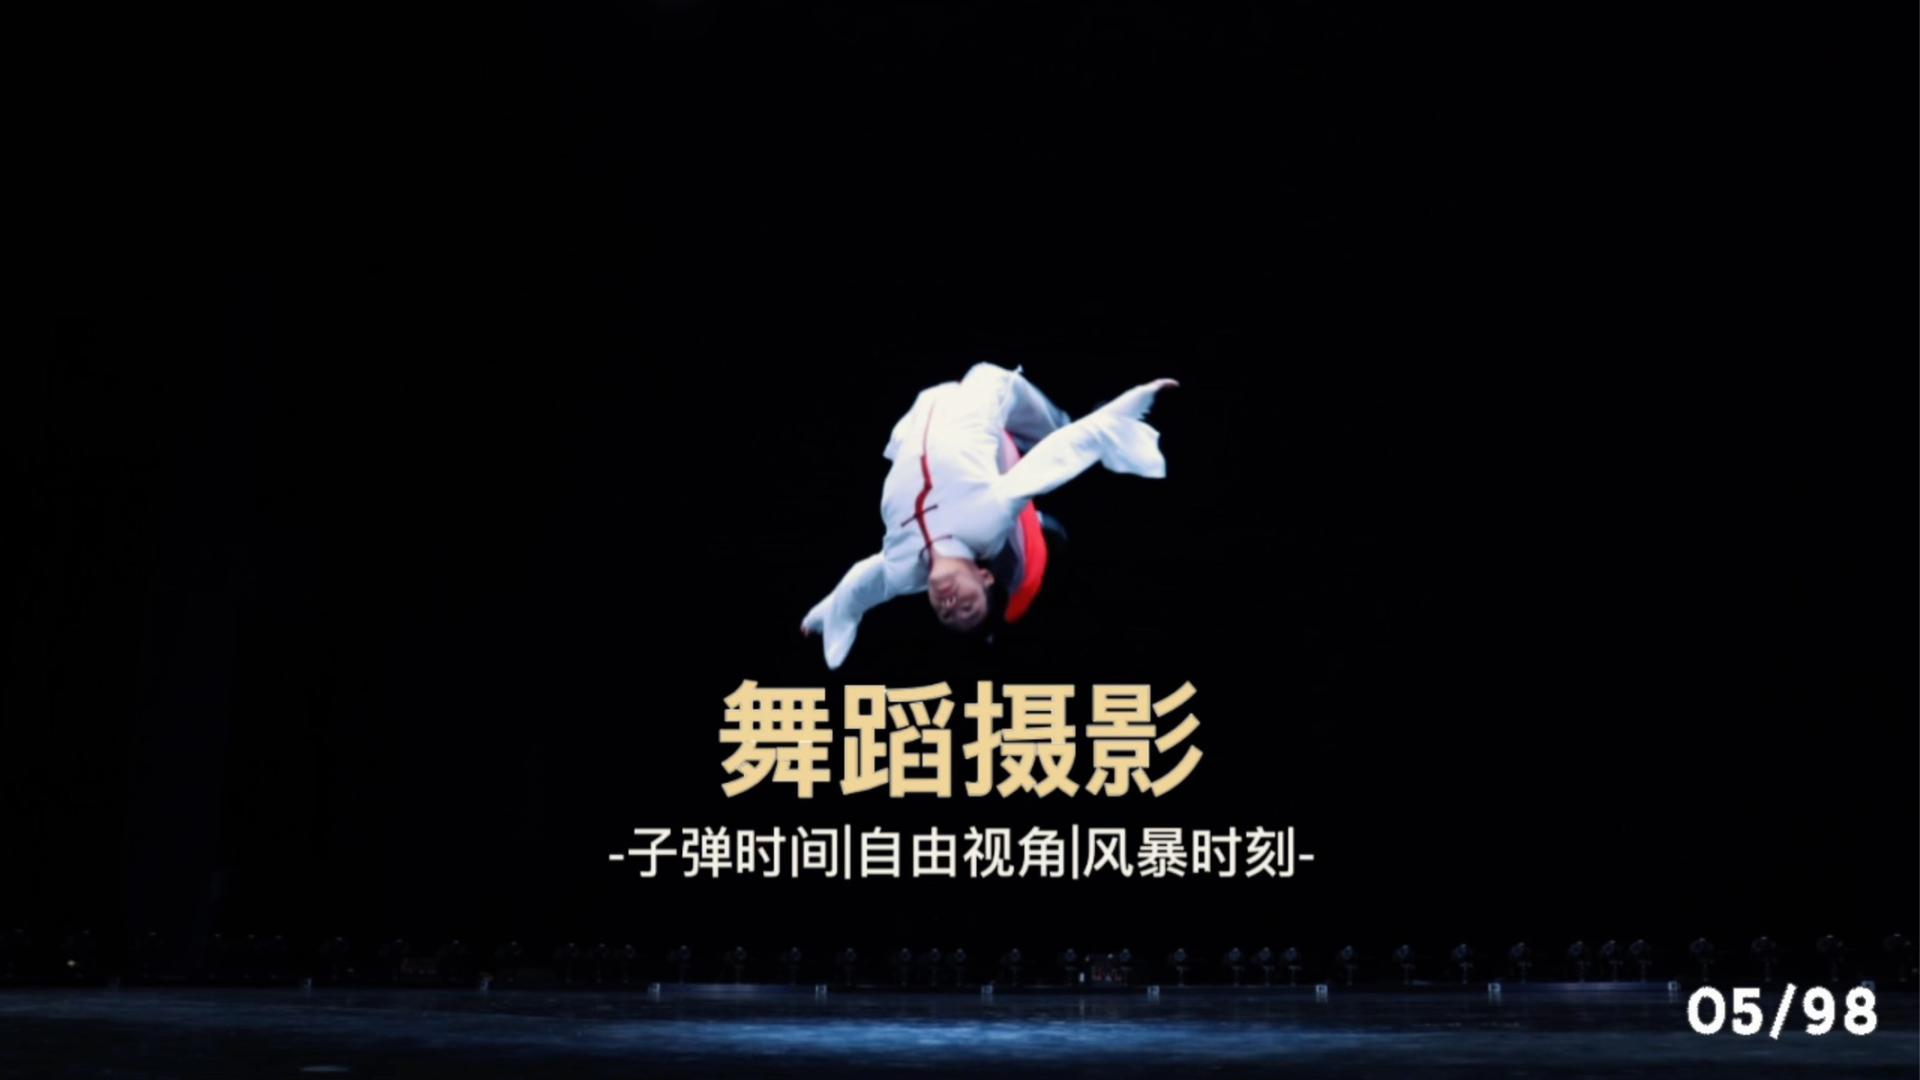 湖南卫视《遇见闪亮的自己》第一季 舞蹈拍摄花絮